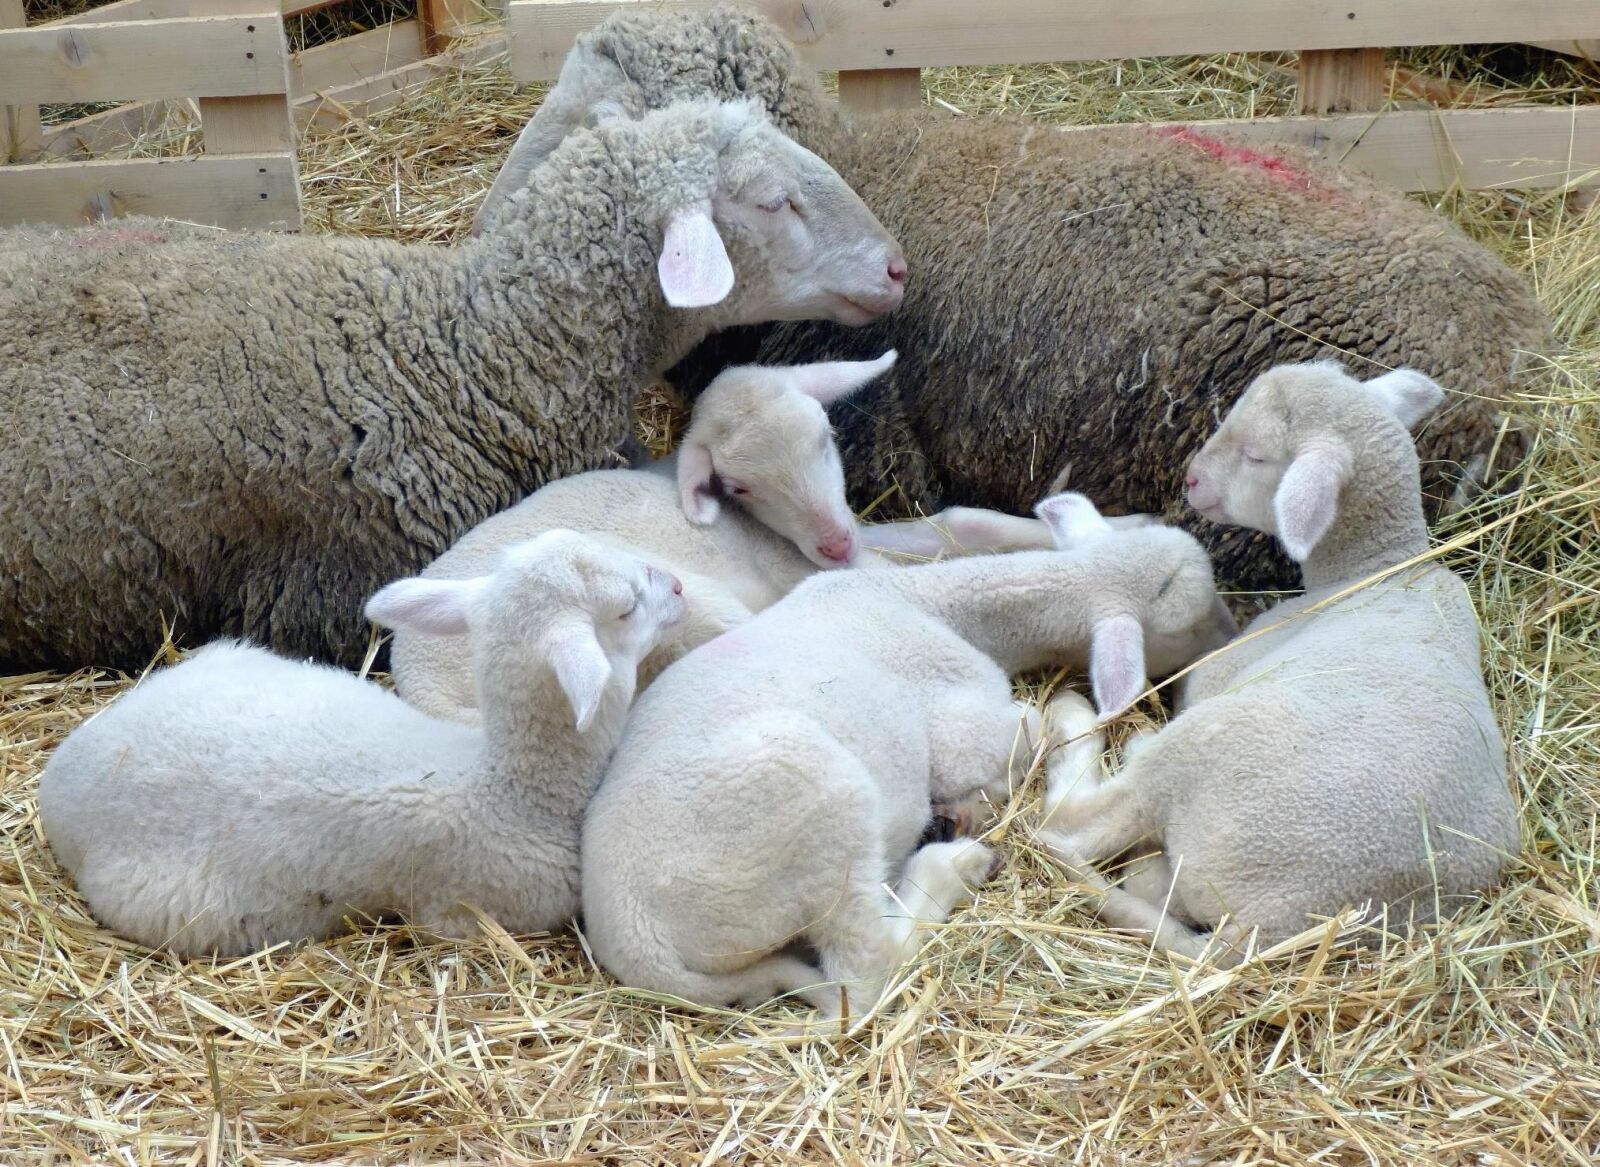 Panasonic DMC-SZ9 sample photo. Sheep, wool, young, animal photography